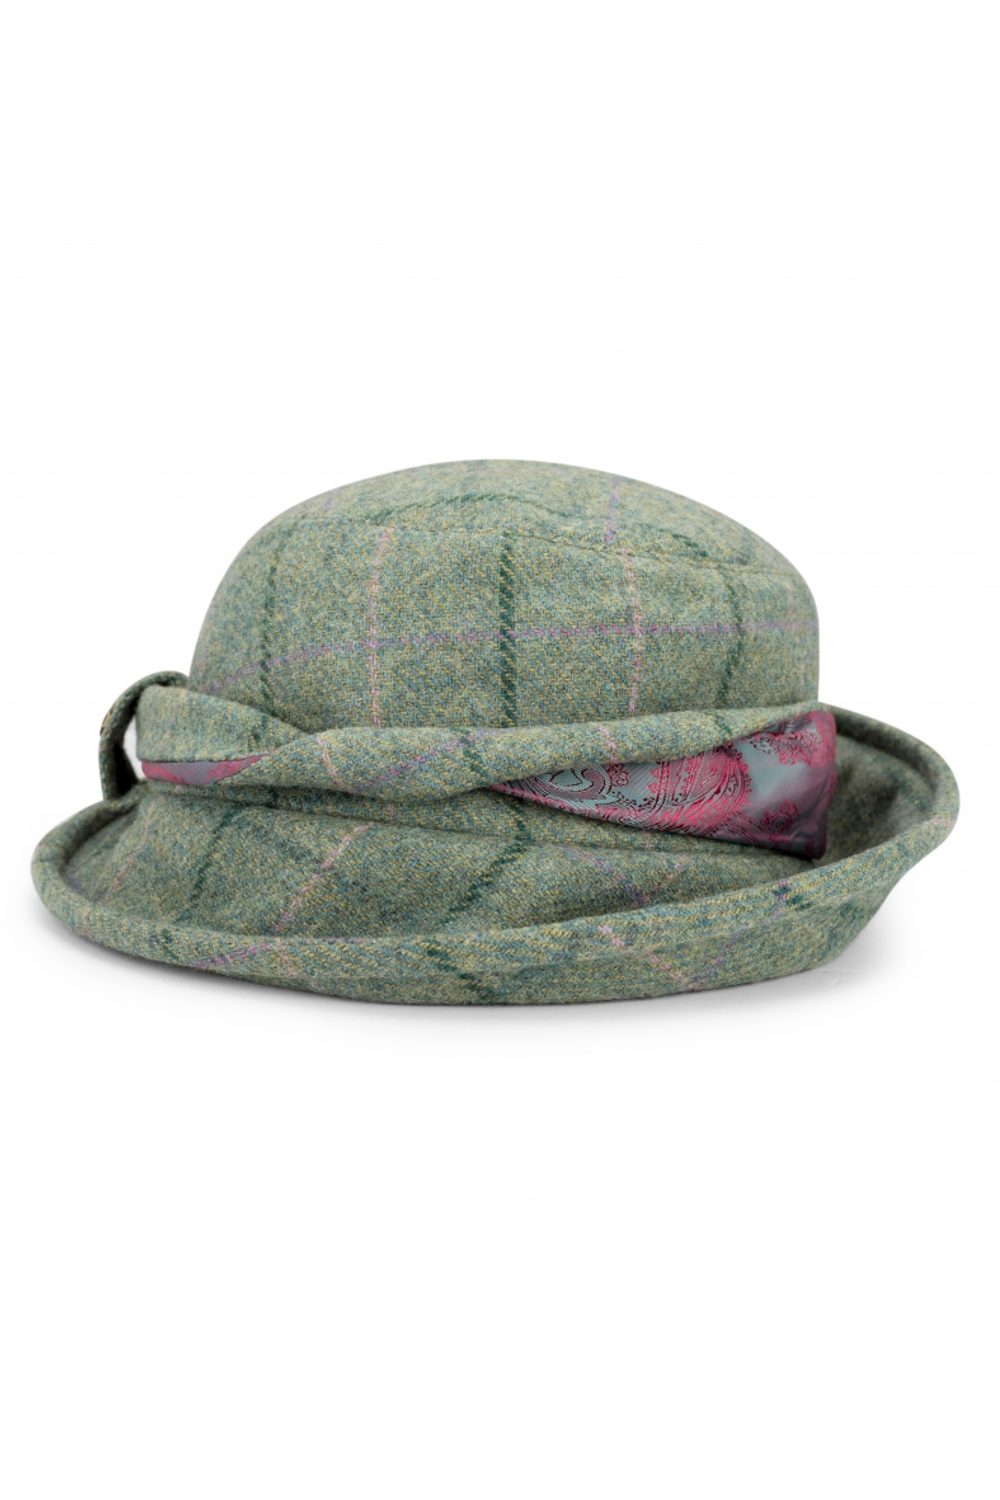 Hoggs of Fife Roslin Ladies Tweed Twist Hat in Spring Bracken